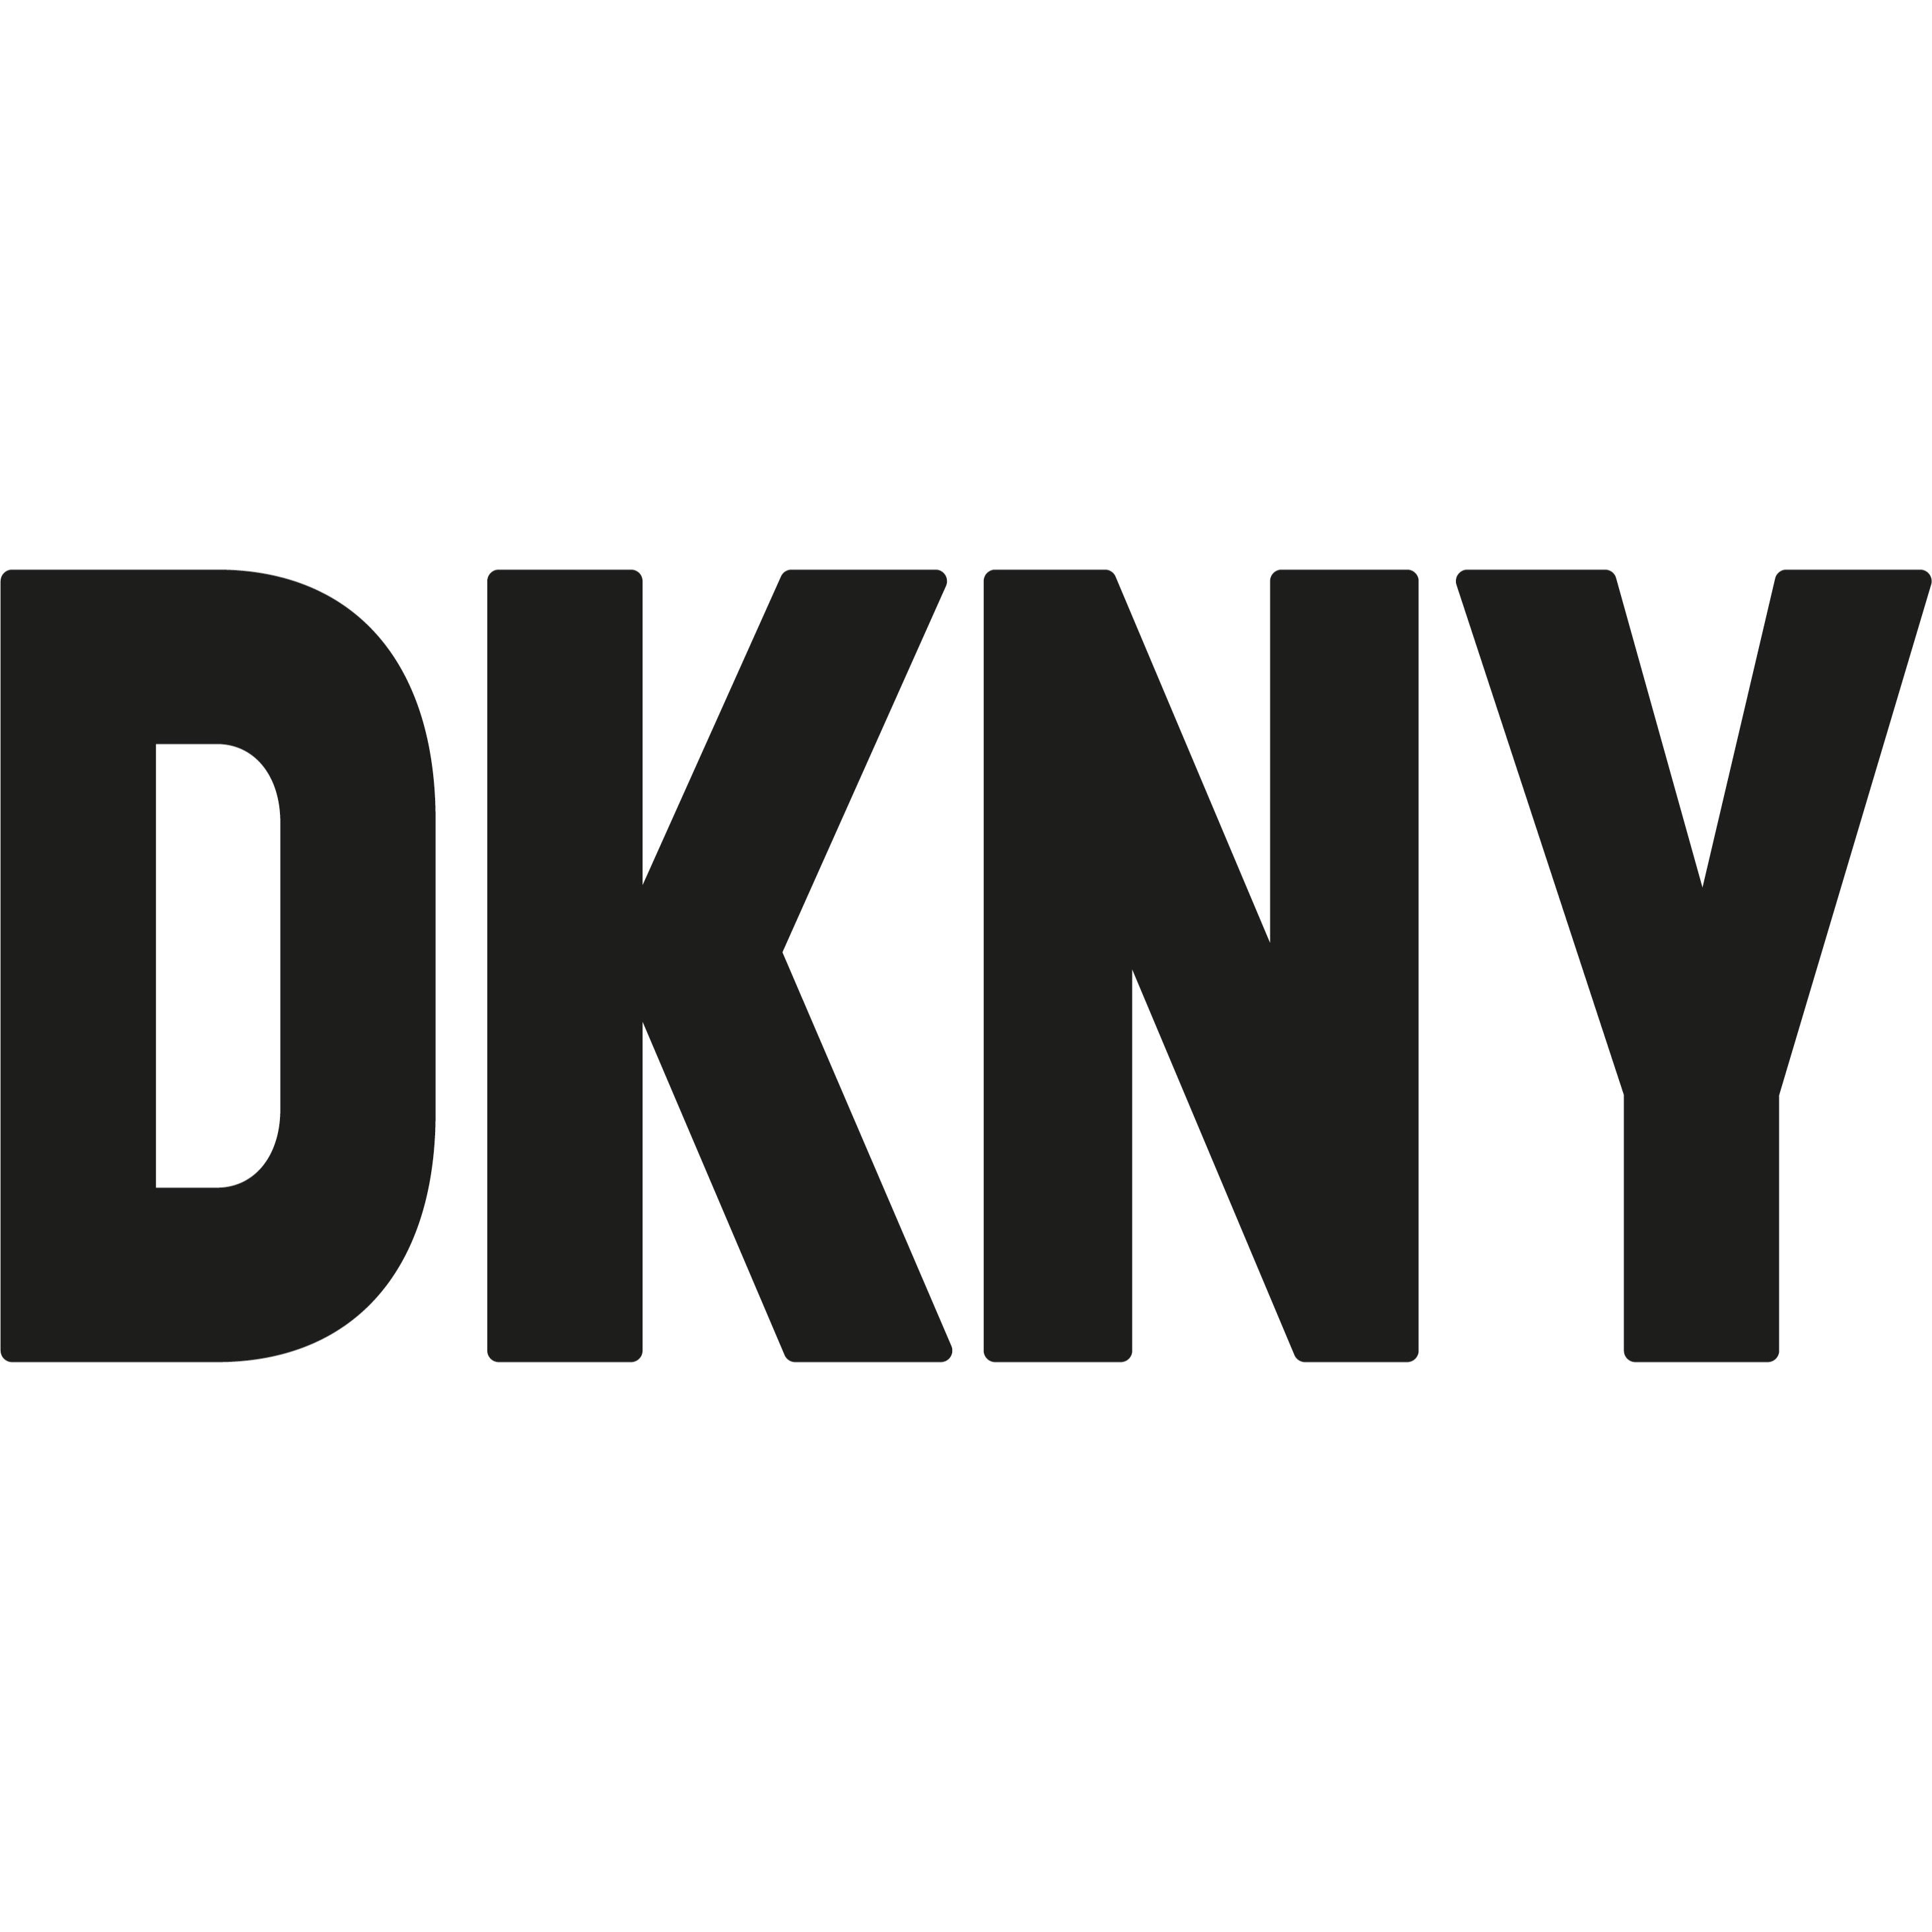 DKNY - Leesburg, VA 20176 - (703)443-6651 | ShowMeLocal.com